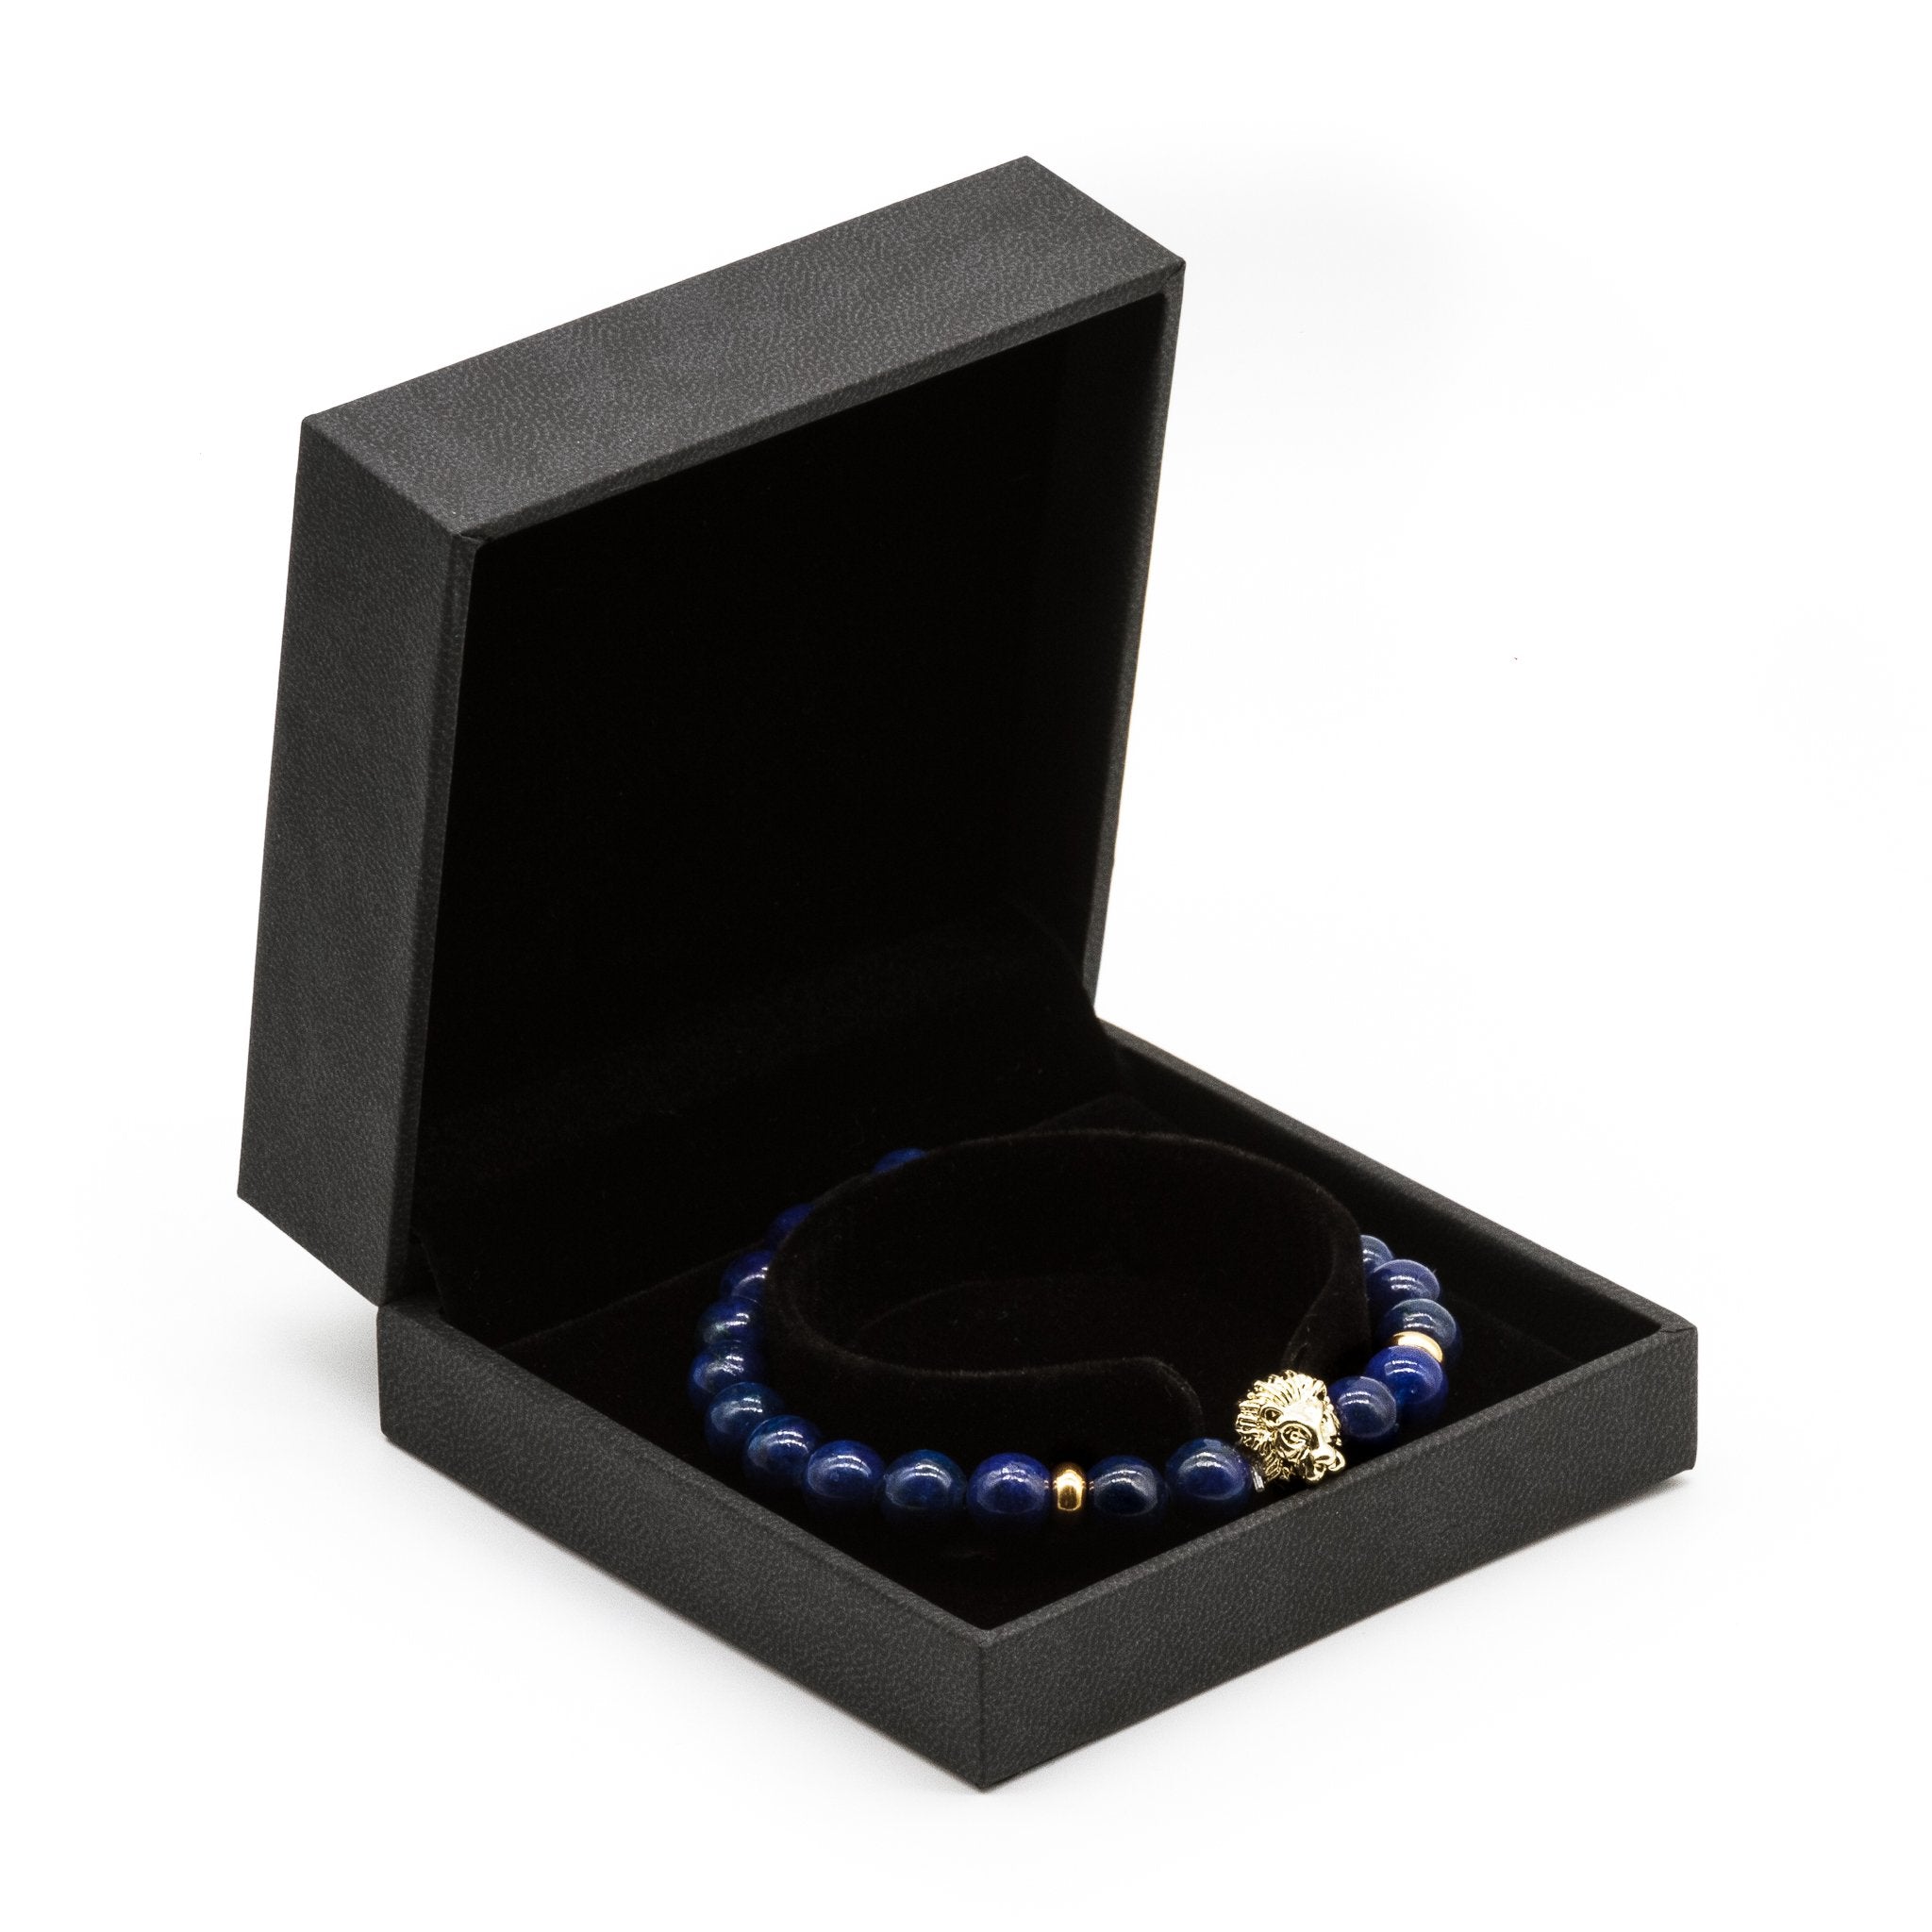 UNCOMMON Men's Beads Bracelet One Gold Lion Charm Blue Jasper Beads